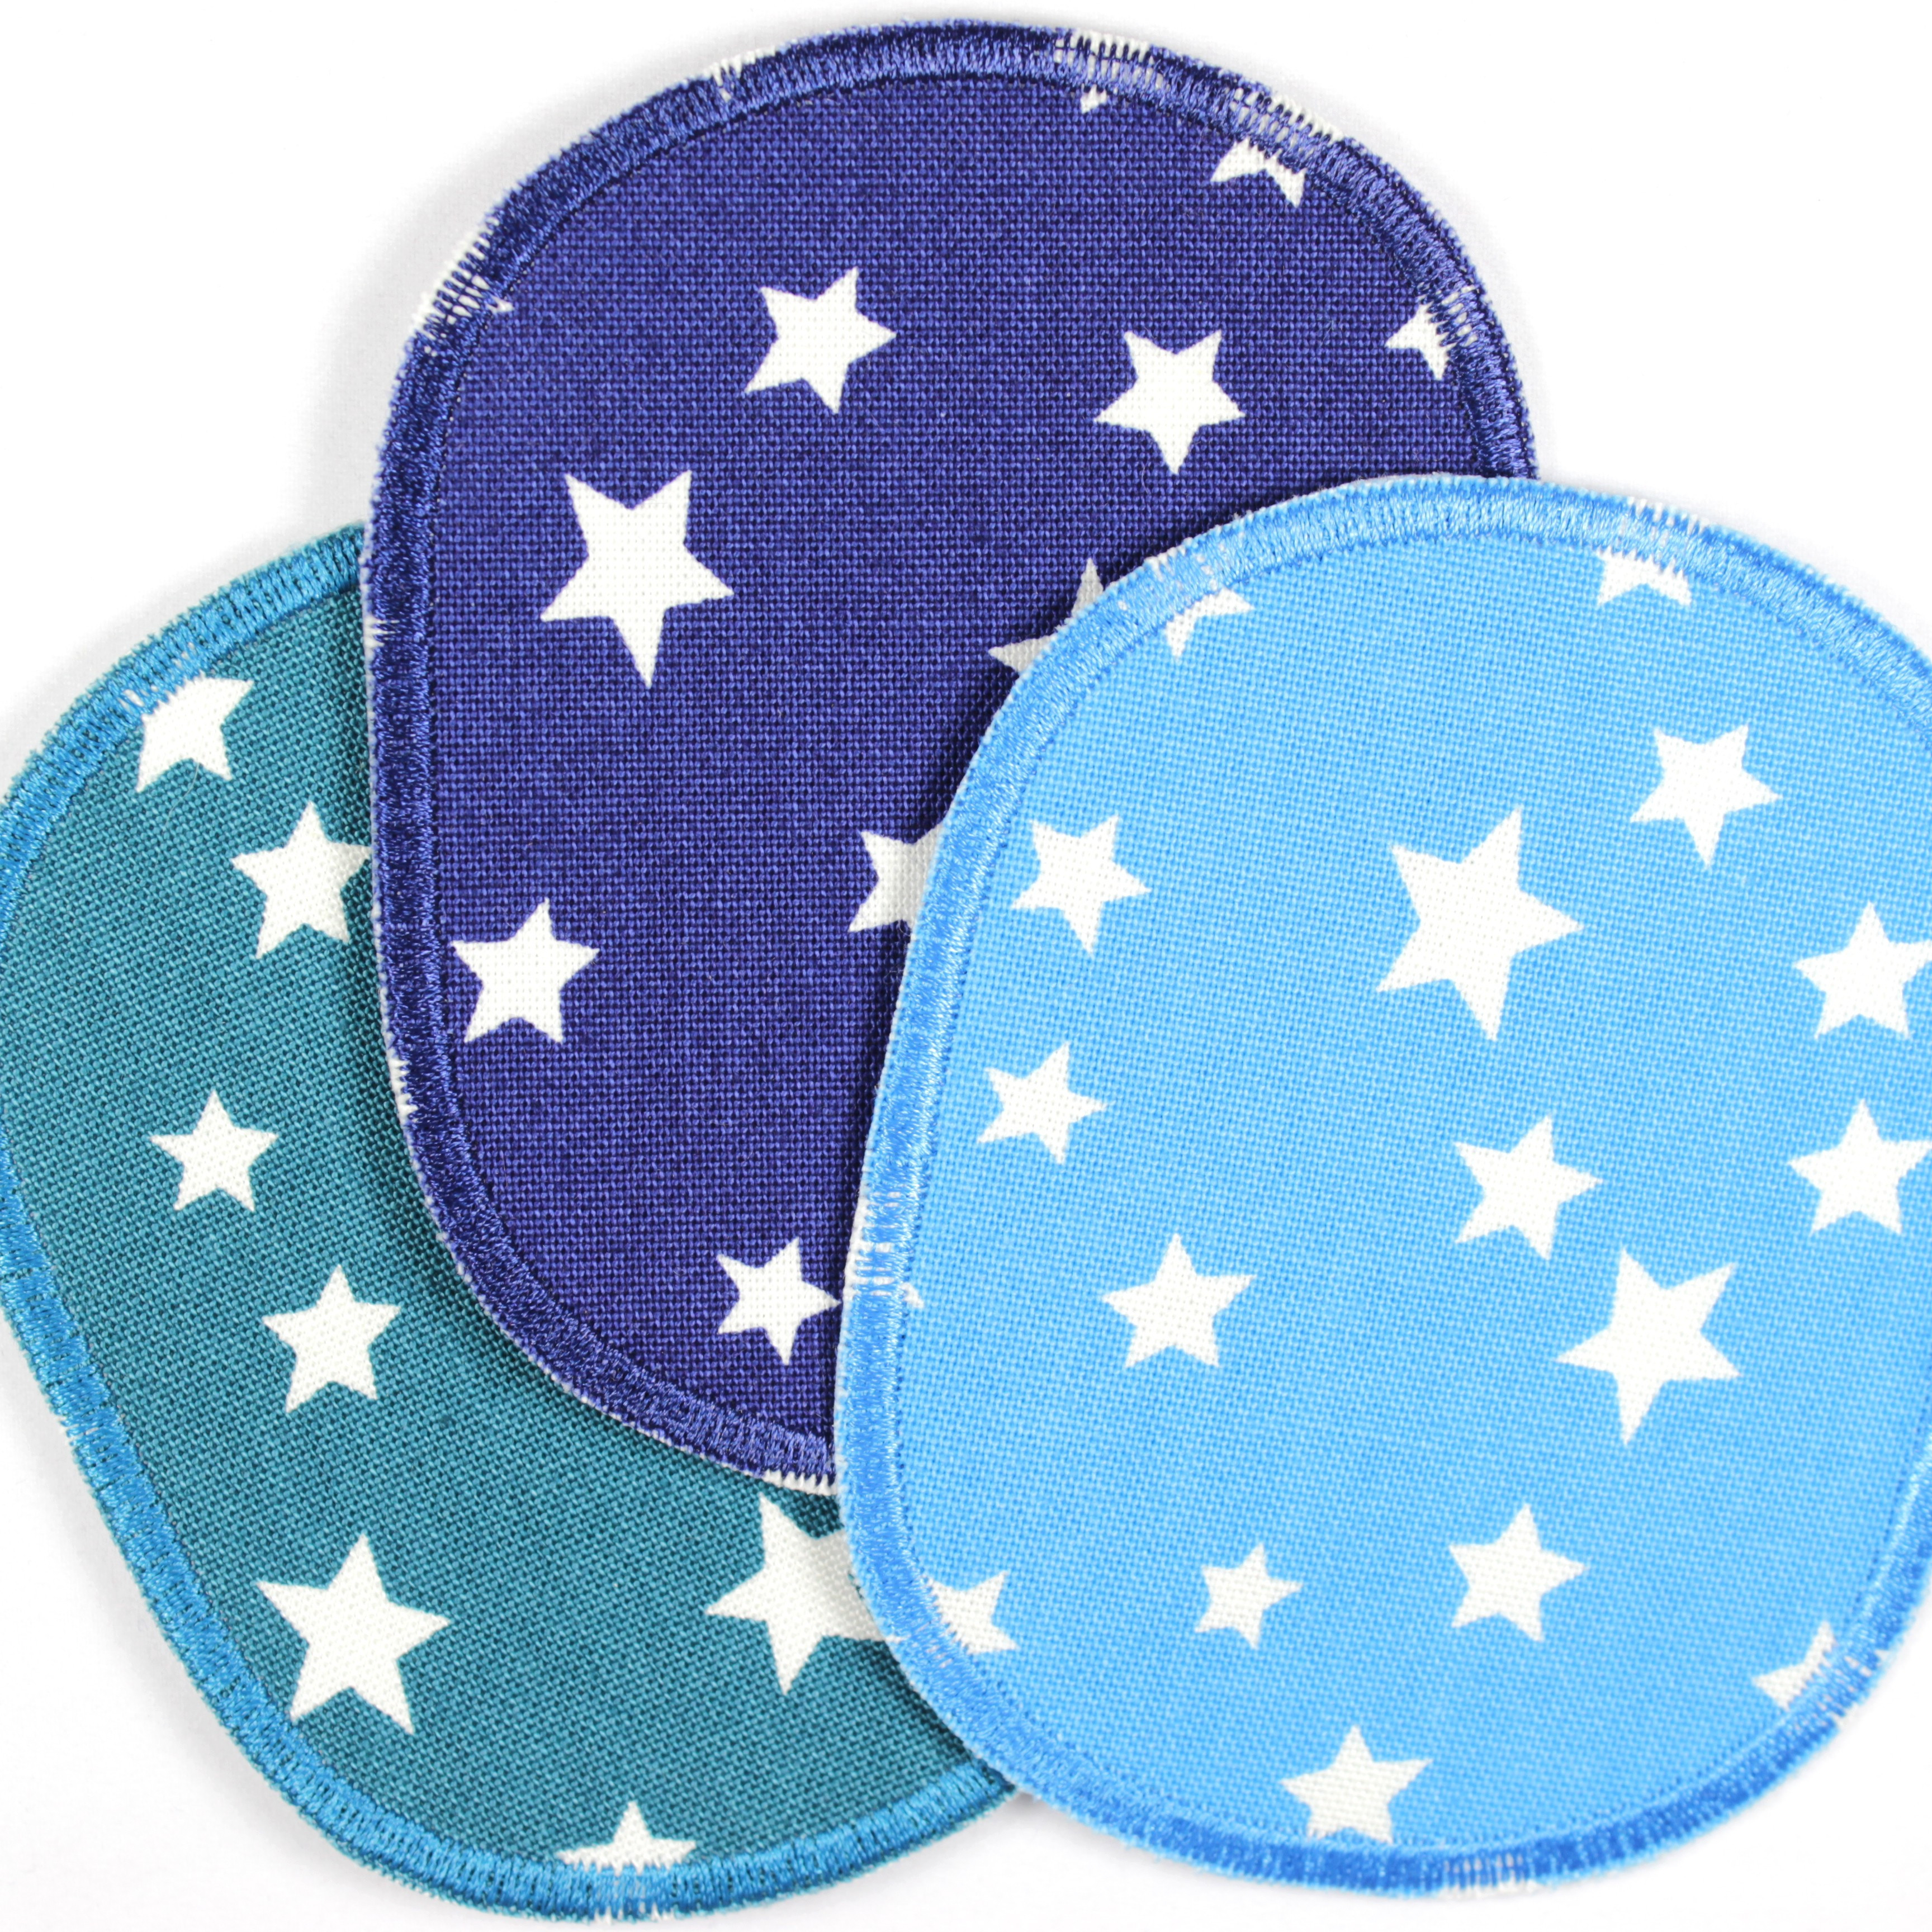 Flicken Set retro Sterne Knieflicken weiss auf dunkelblau 2 Hosenflicken 10 x 8 cm Buegelflicken Aufbuegler für Kinder